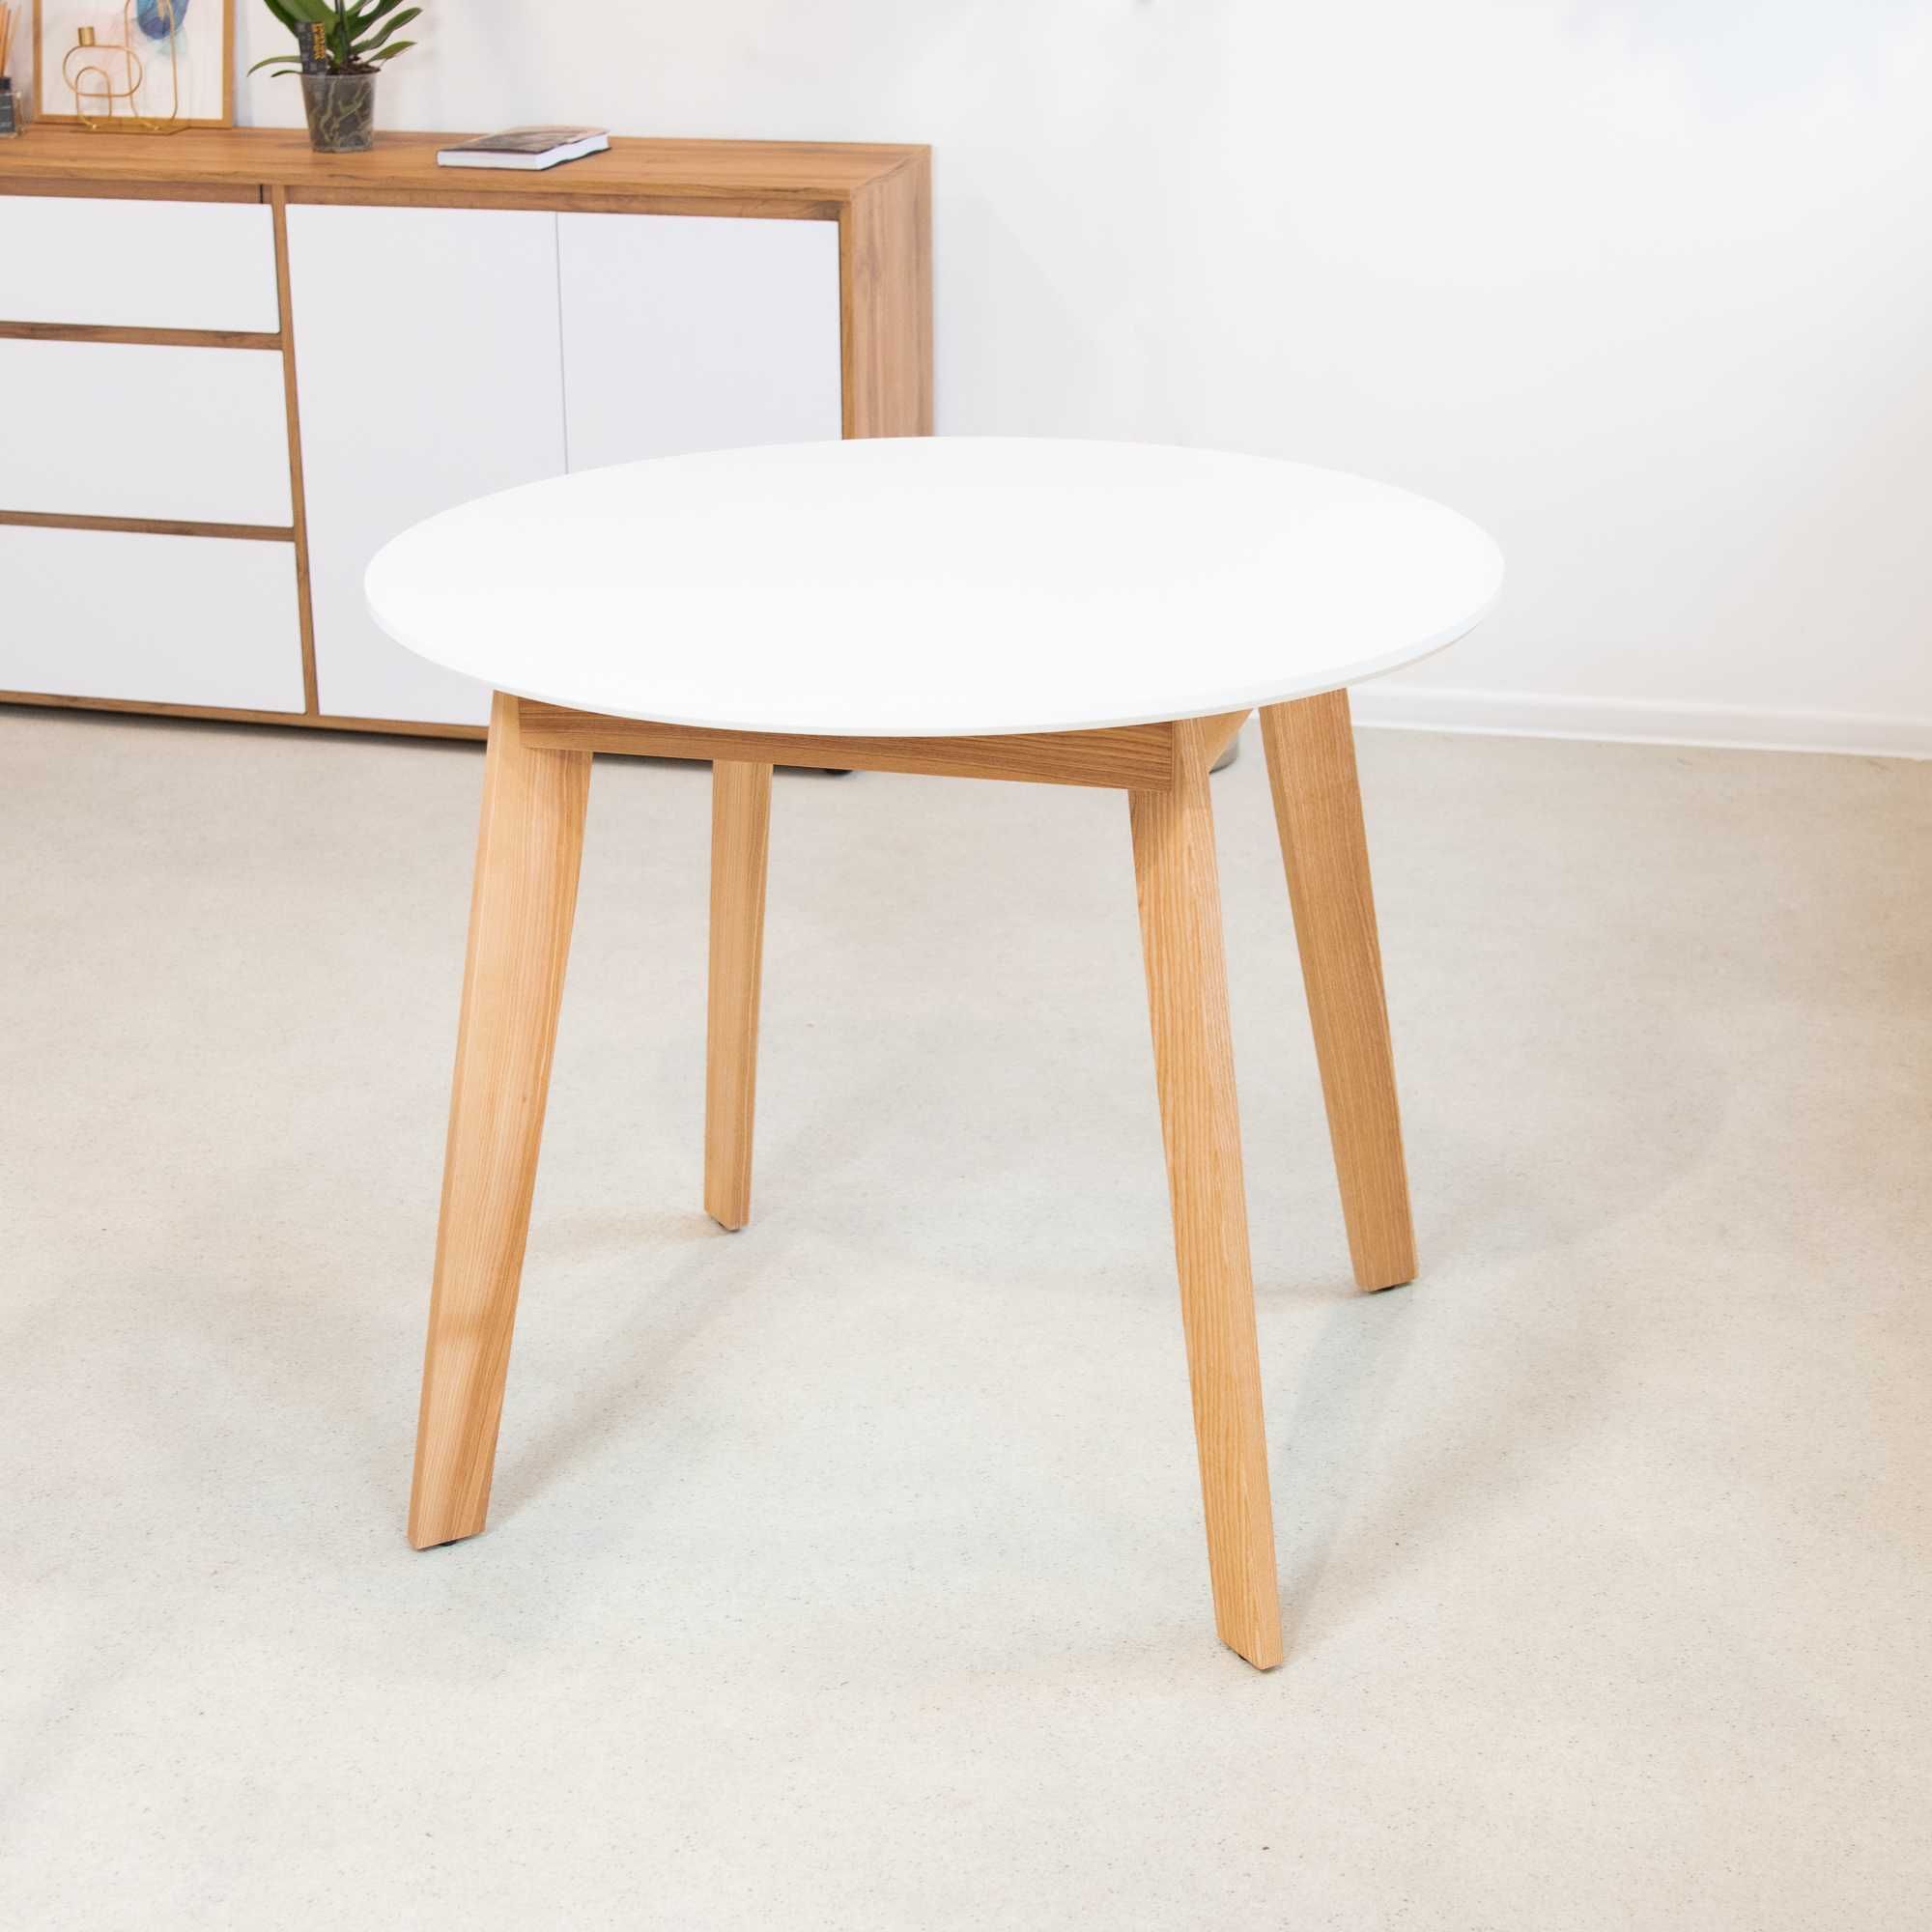 Стіл круглий Густаво 90, круглый стол, кухонний стіл, стіл на кухню